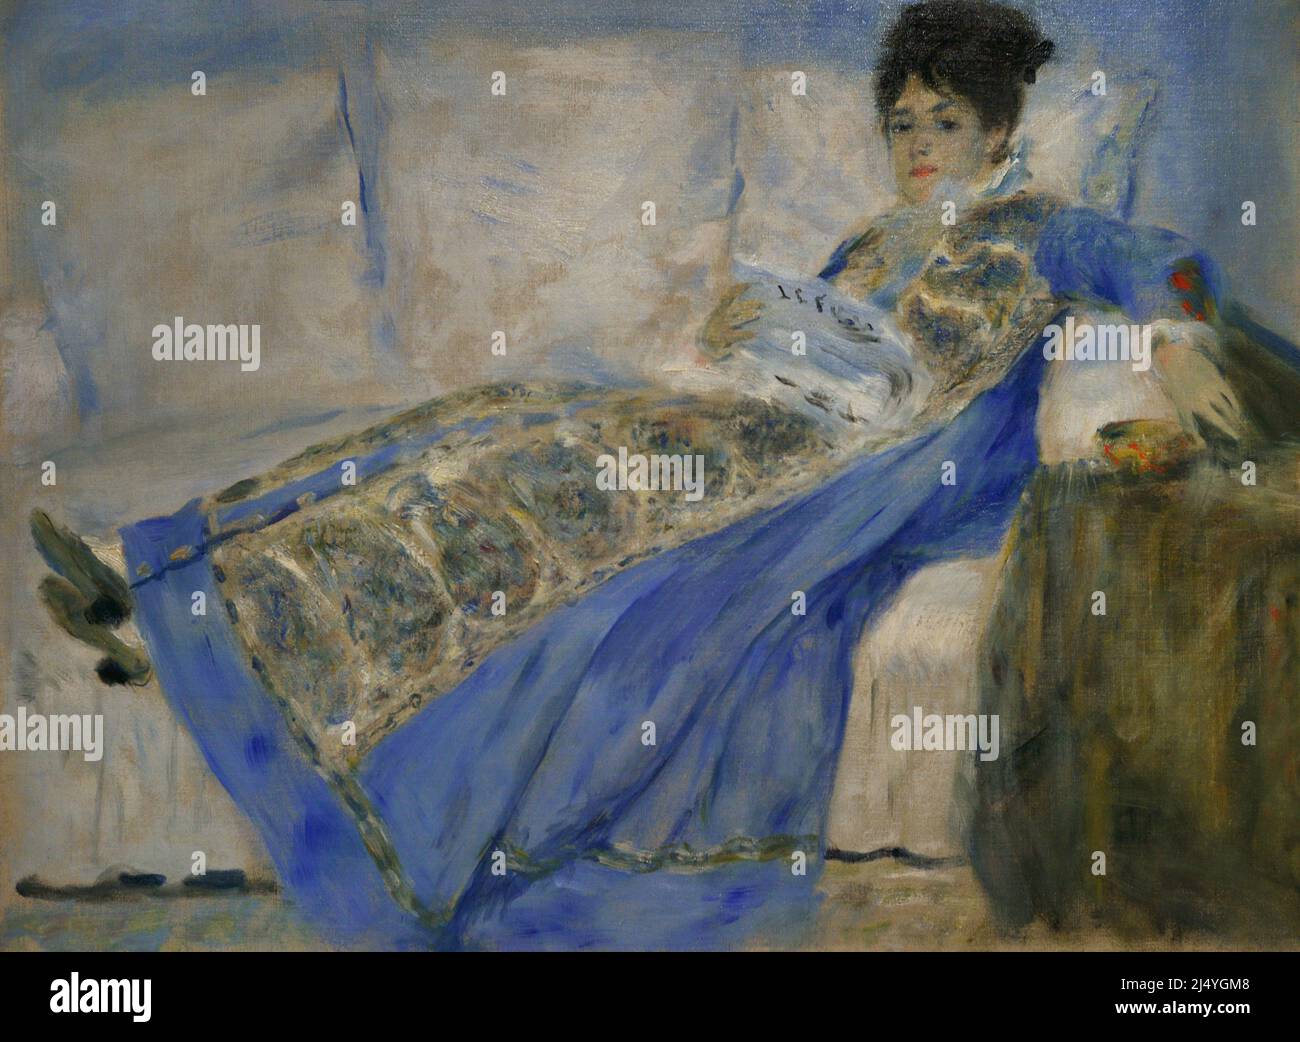 Pierre-Auguste Renoir (1841-1919). Peintre impressionniste français. Portrait de Madame Claude Monet, ca. 1872-1874. Huile sur toile (53 x 71,7 cm). Musée Calouste Gulbenkian. Lisbonne. Portugal. Banque D'Images